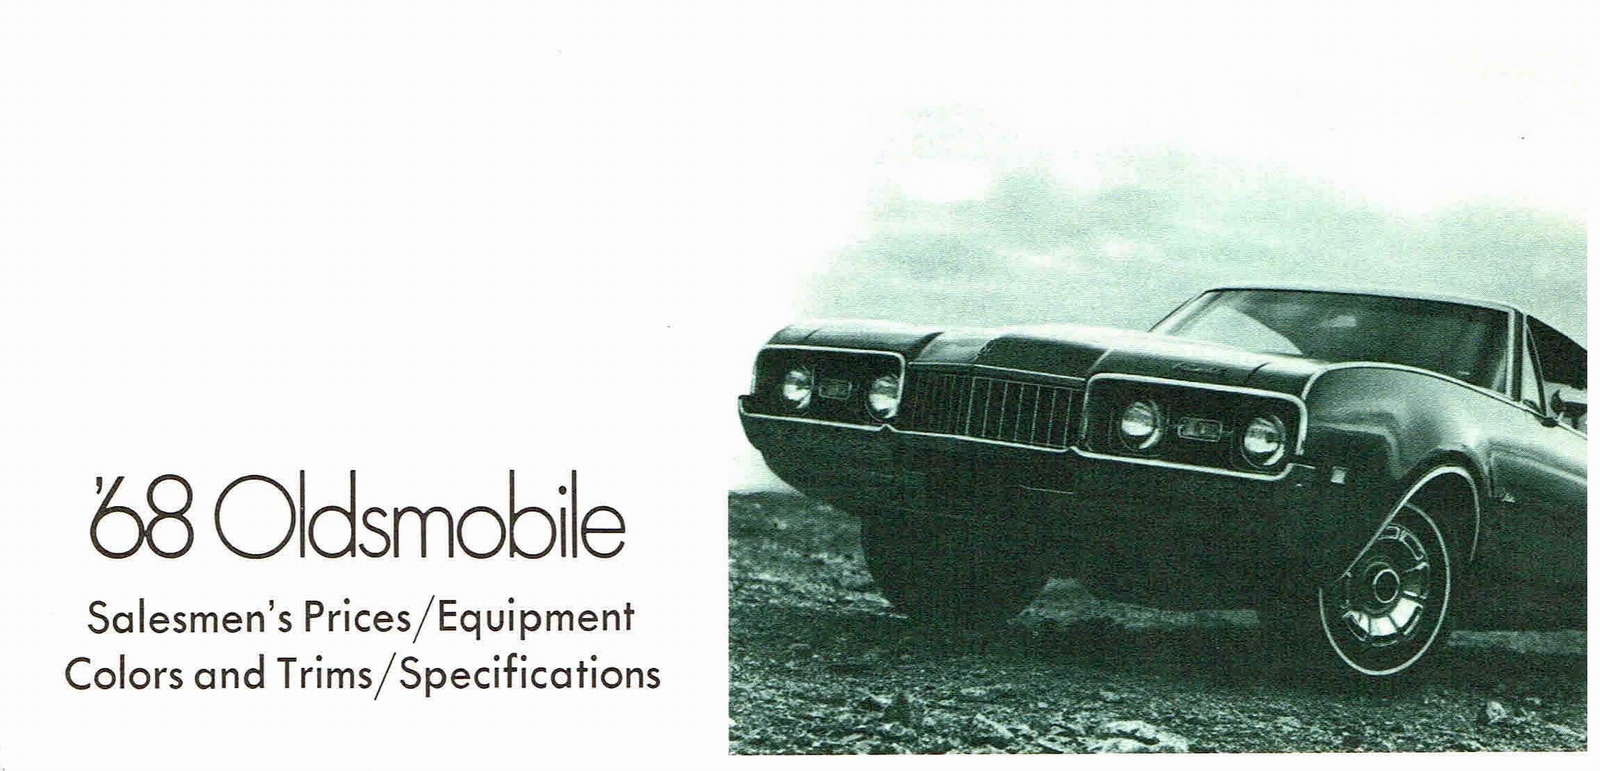 n_1968 Oldsmobile Salesmen's Specs-01.jpg